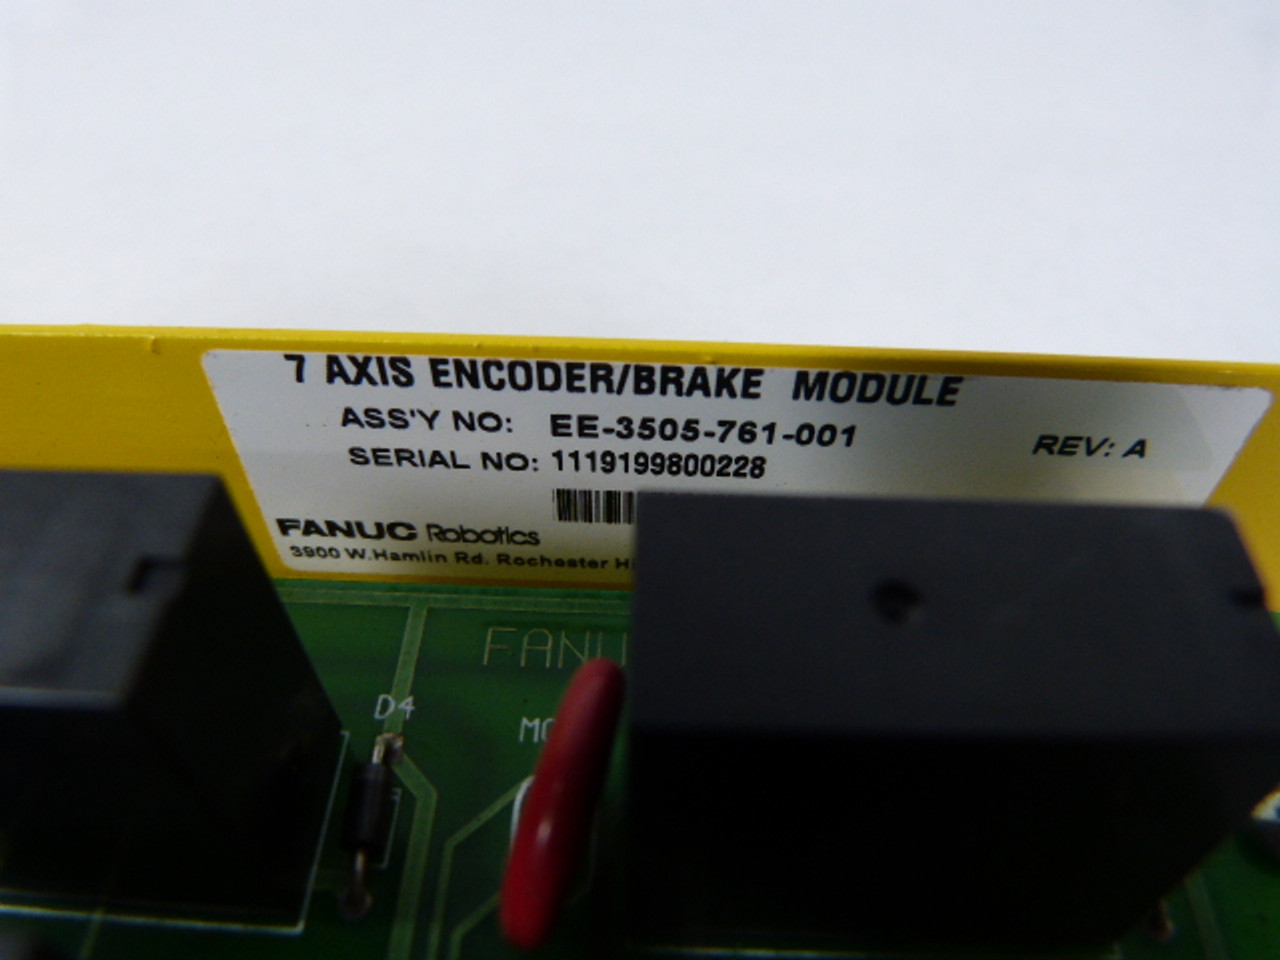 Fanuc EE-3505-761-001 Axis Encoder/Brake Module USED